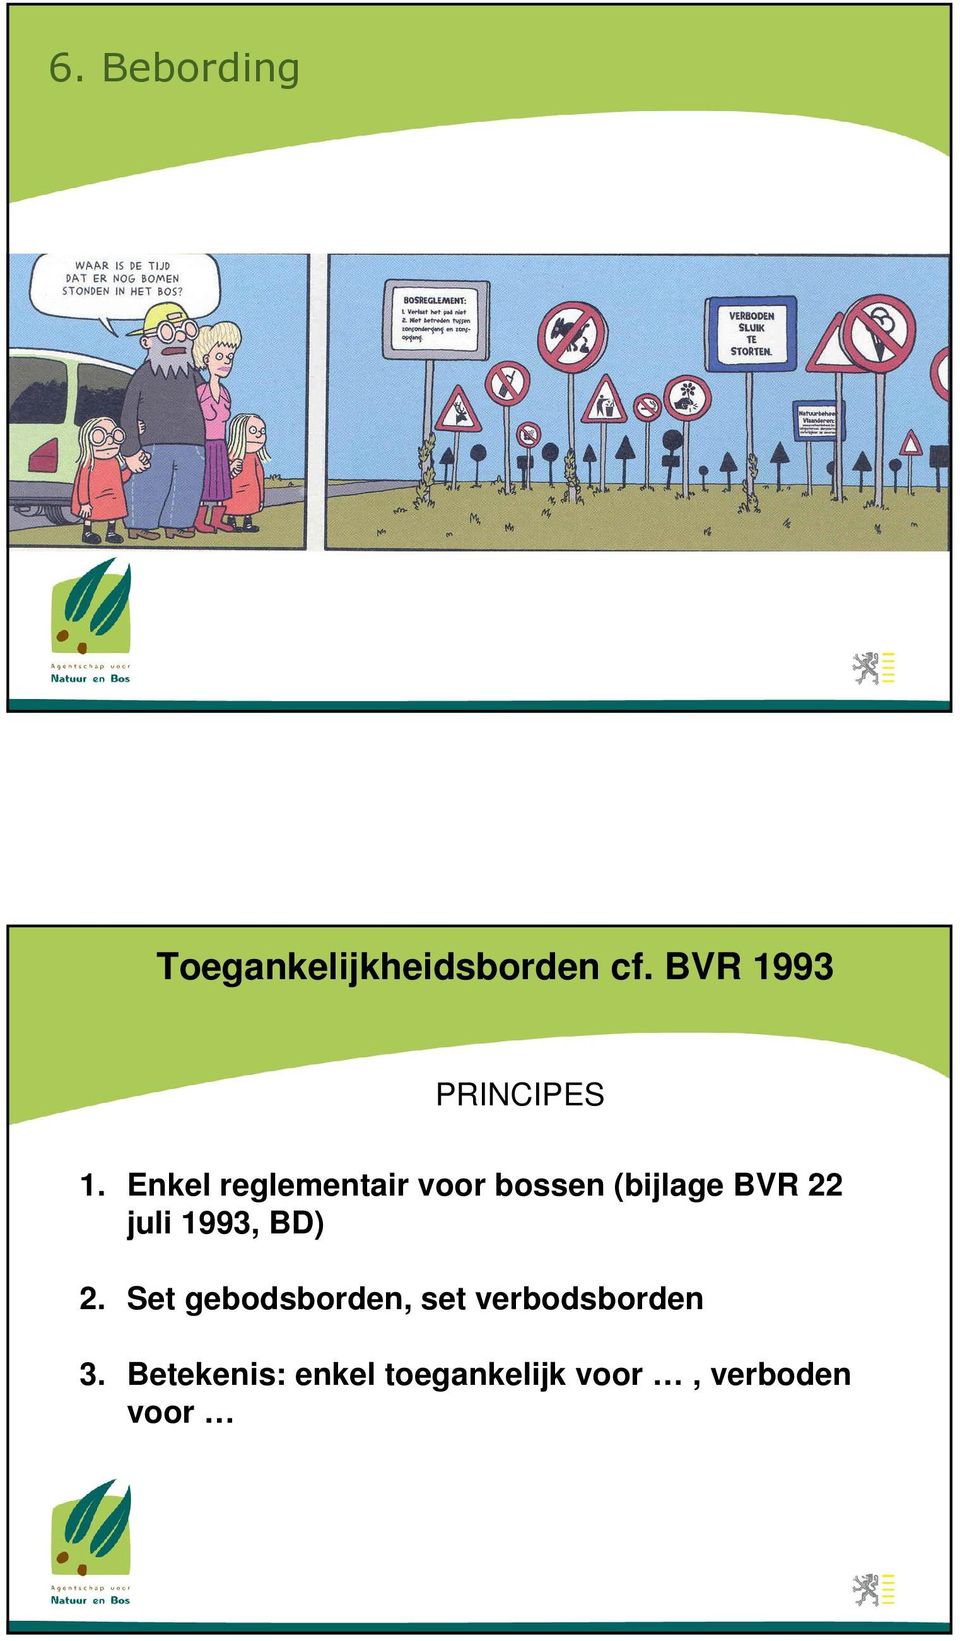 Enkel reglementair voor bossen (bijlage BVR 22 juli